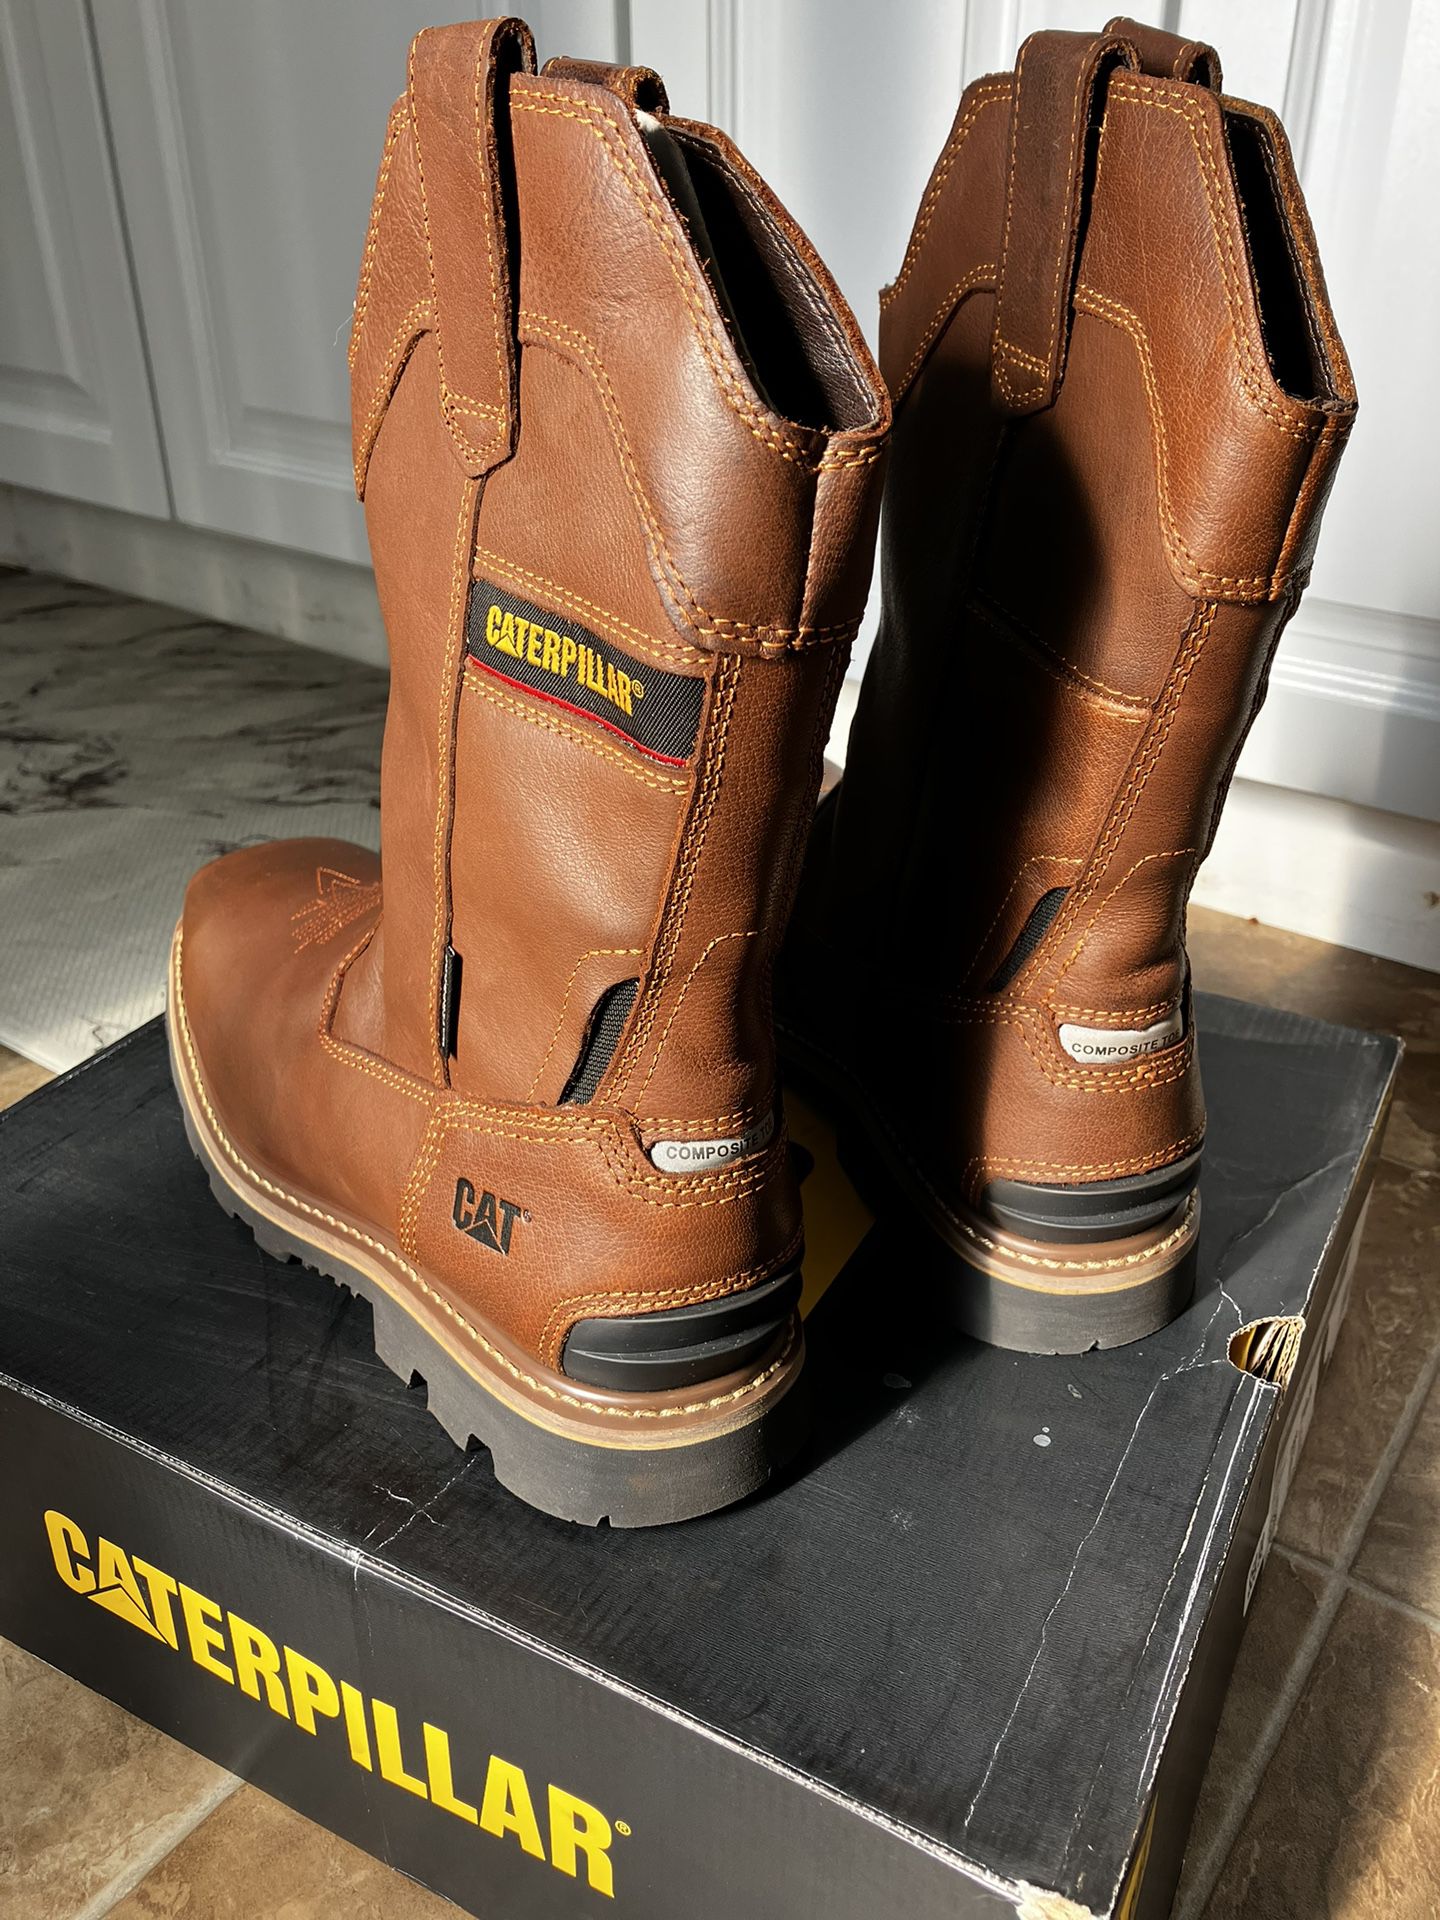 Brand new Men’s Steel Toe Waterproof Work Boots 10.5